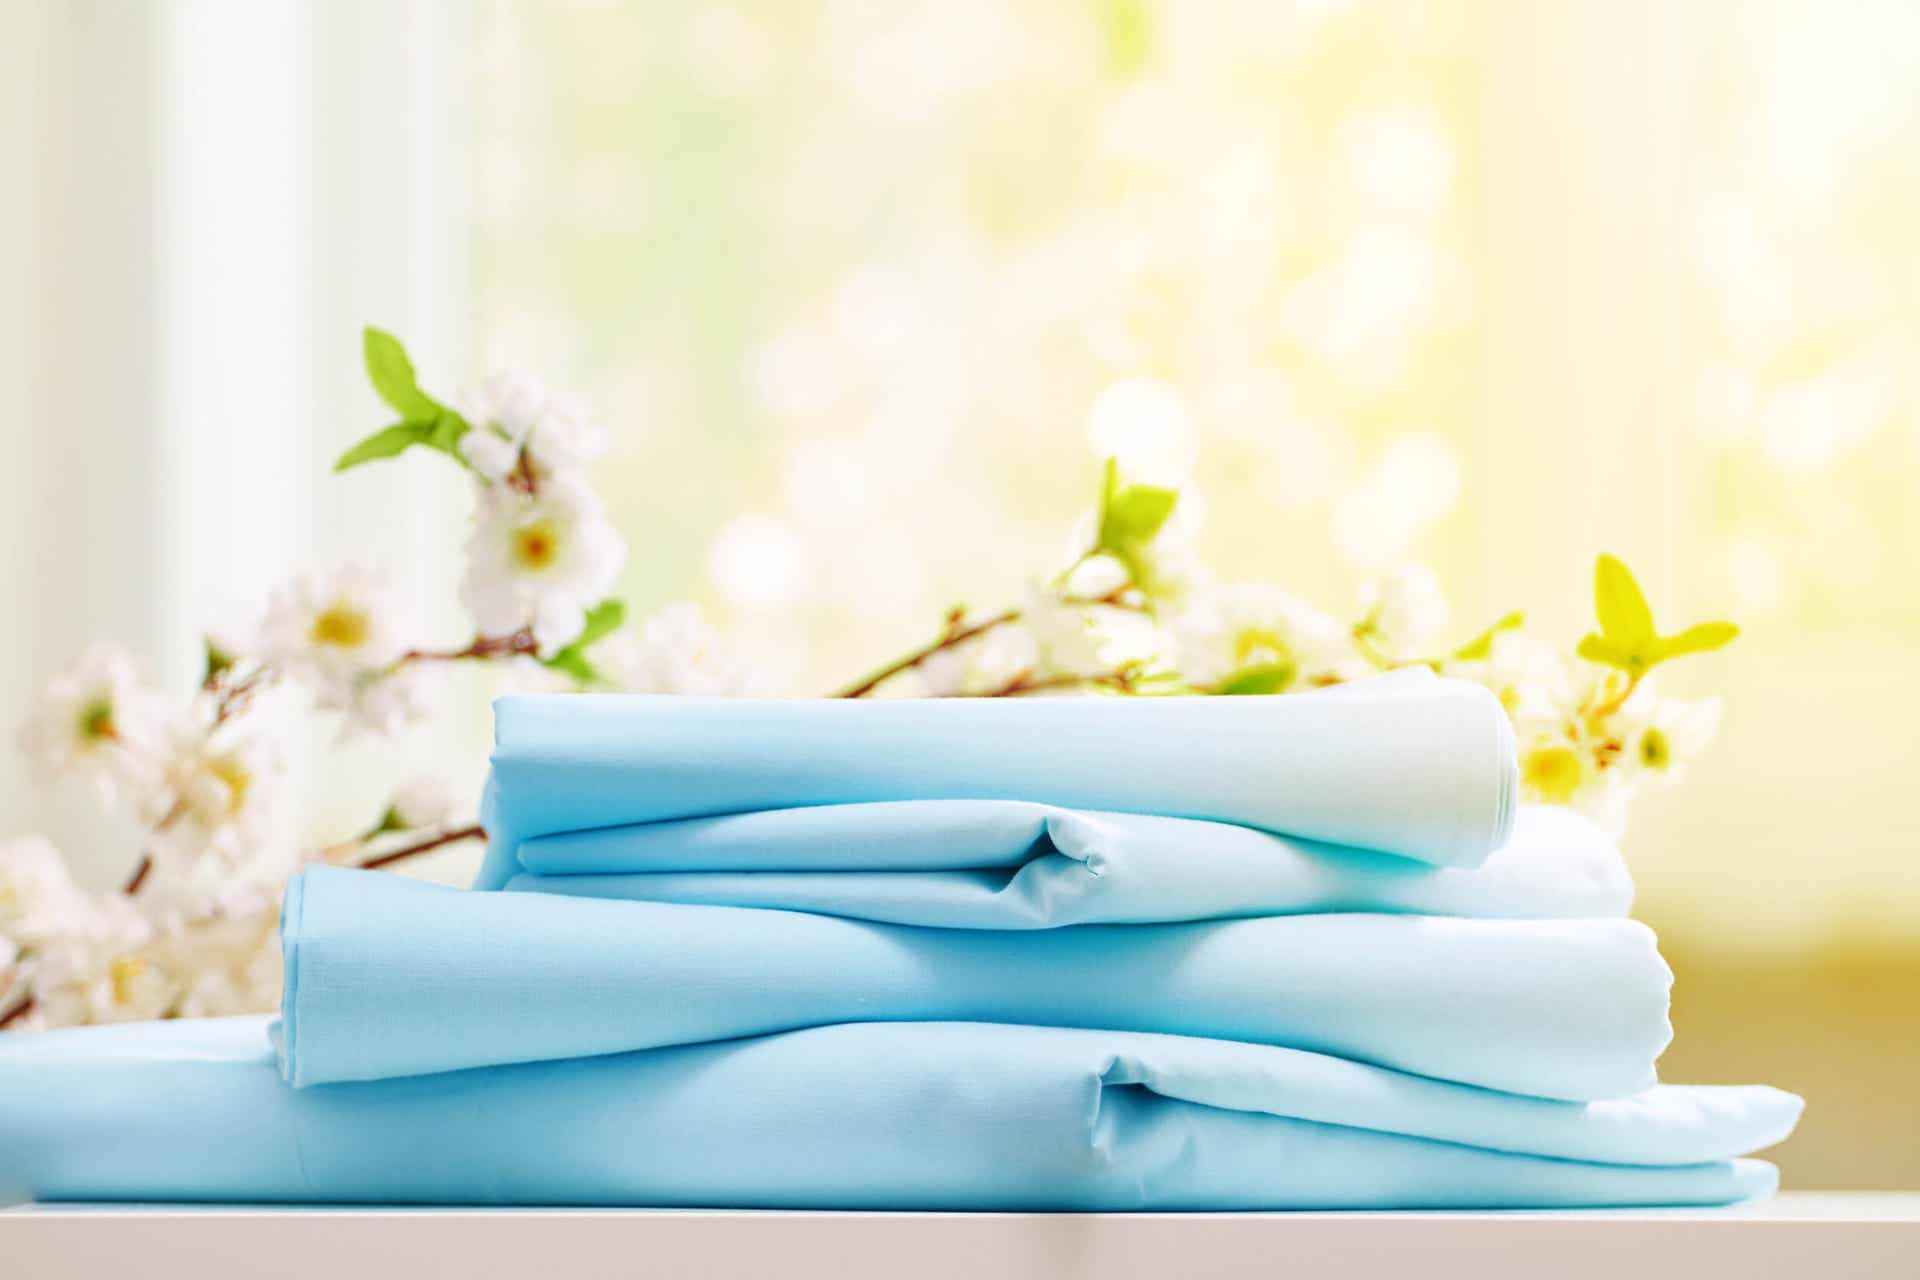 Para eliminar los ácaros pueden lavarse las sábanas